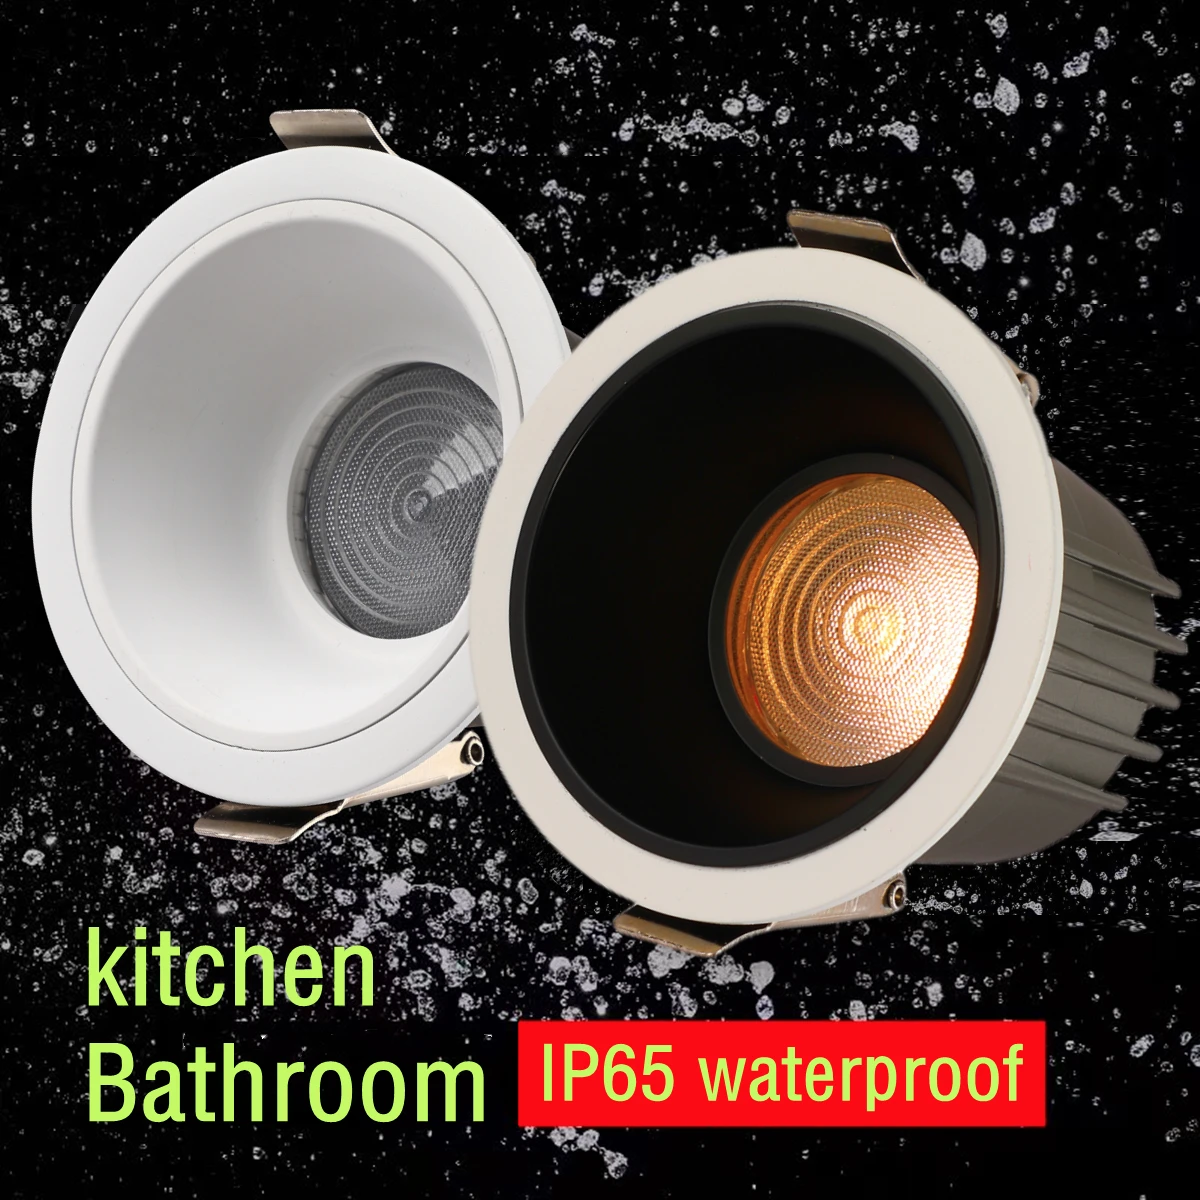 https://ae01.alicdn.com/kf/S063f76325a91467ba63106591d5eef77u/IP65-Waterproof-Downlight-110V-220V-Anti-Glare-Bee-Net-Kitchen-Bathroom-Toilet-Eaves-Black-White-LED.jpg